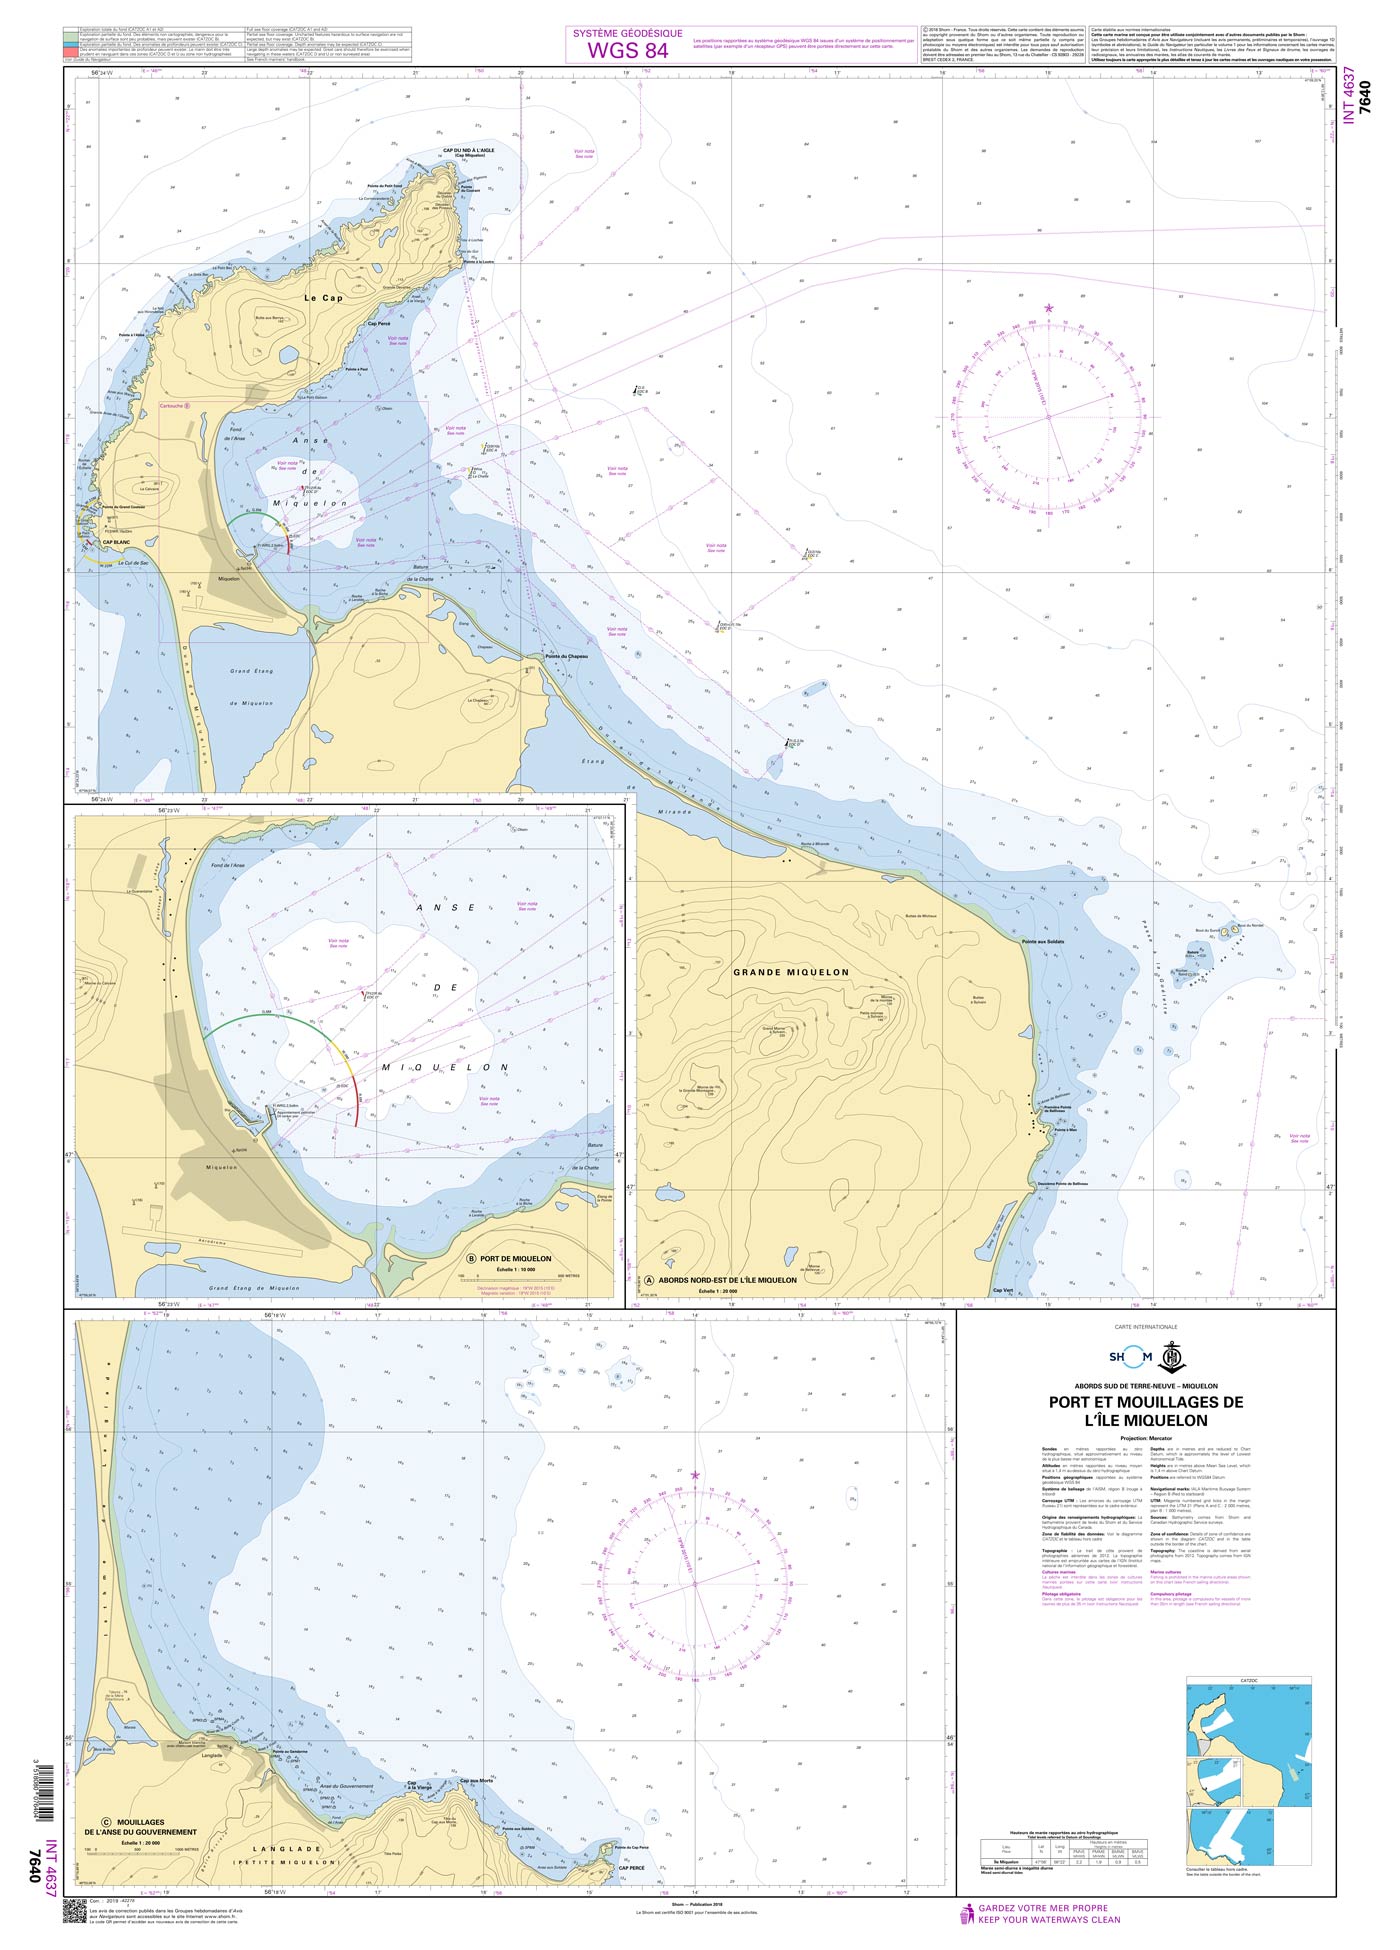 Shom 7640 - INT 4637 Port et mouillages de l'Île Miquelon